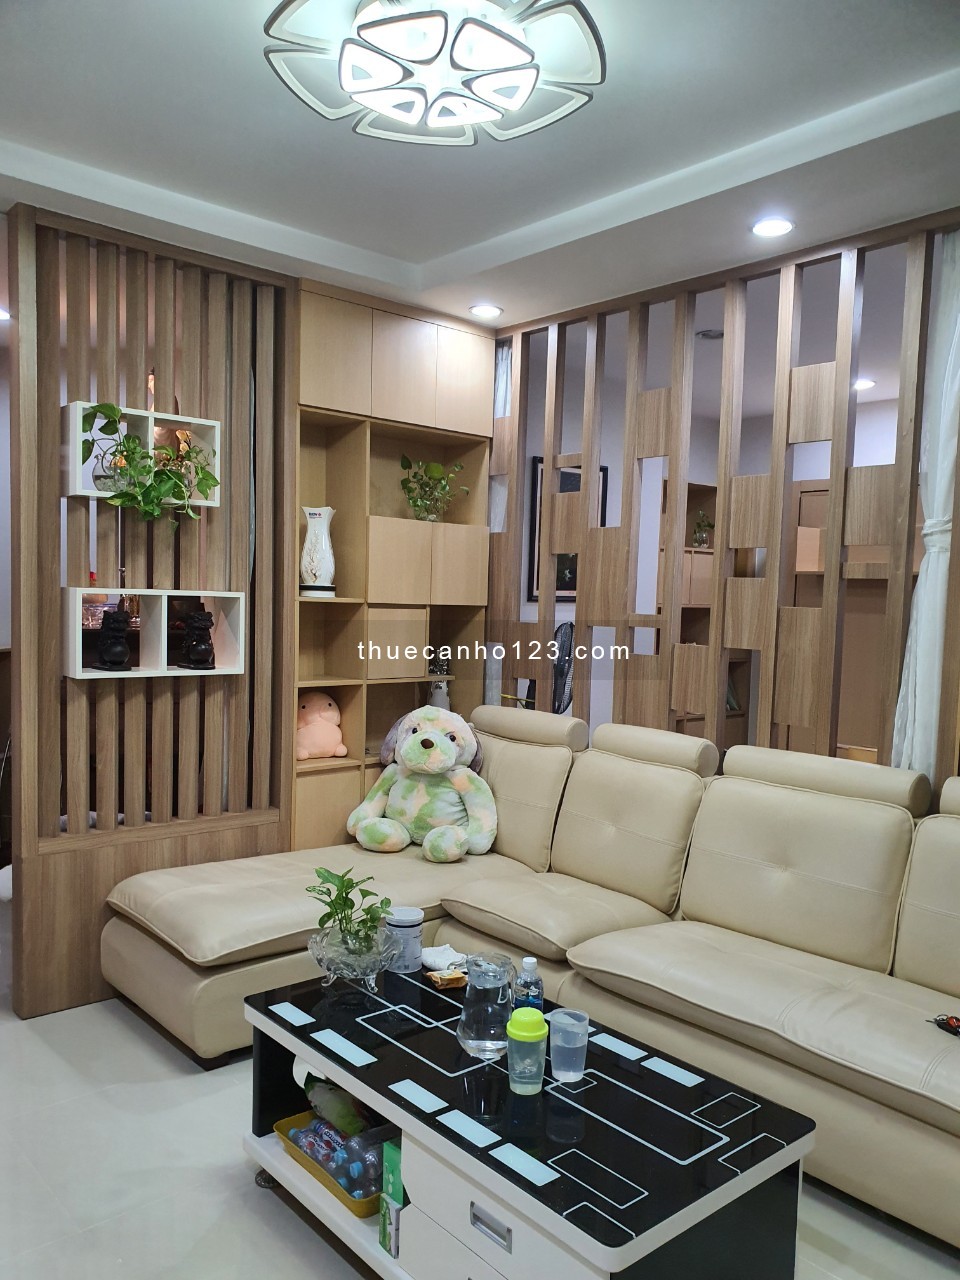 Cần cho thuê căn hộ chung cư Him Lam Chợ Lớn, Quận 6 - 0975598039